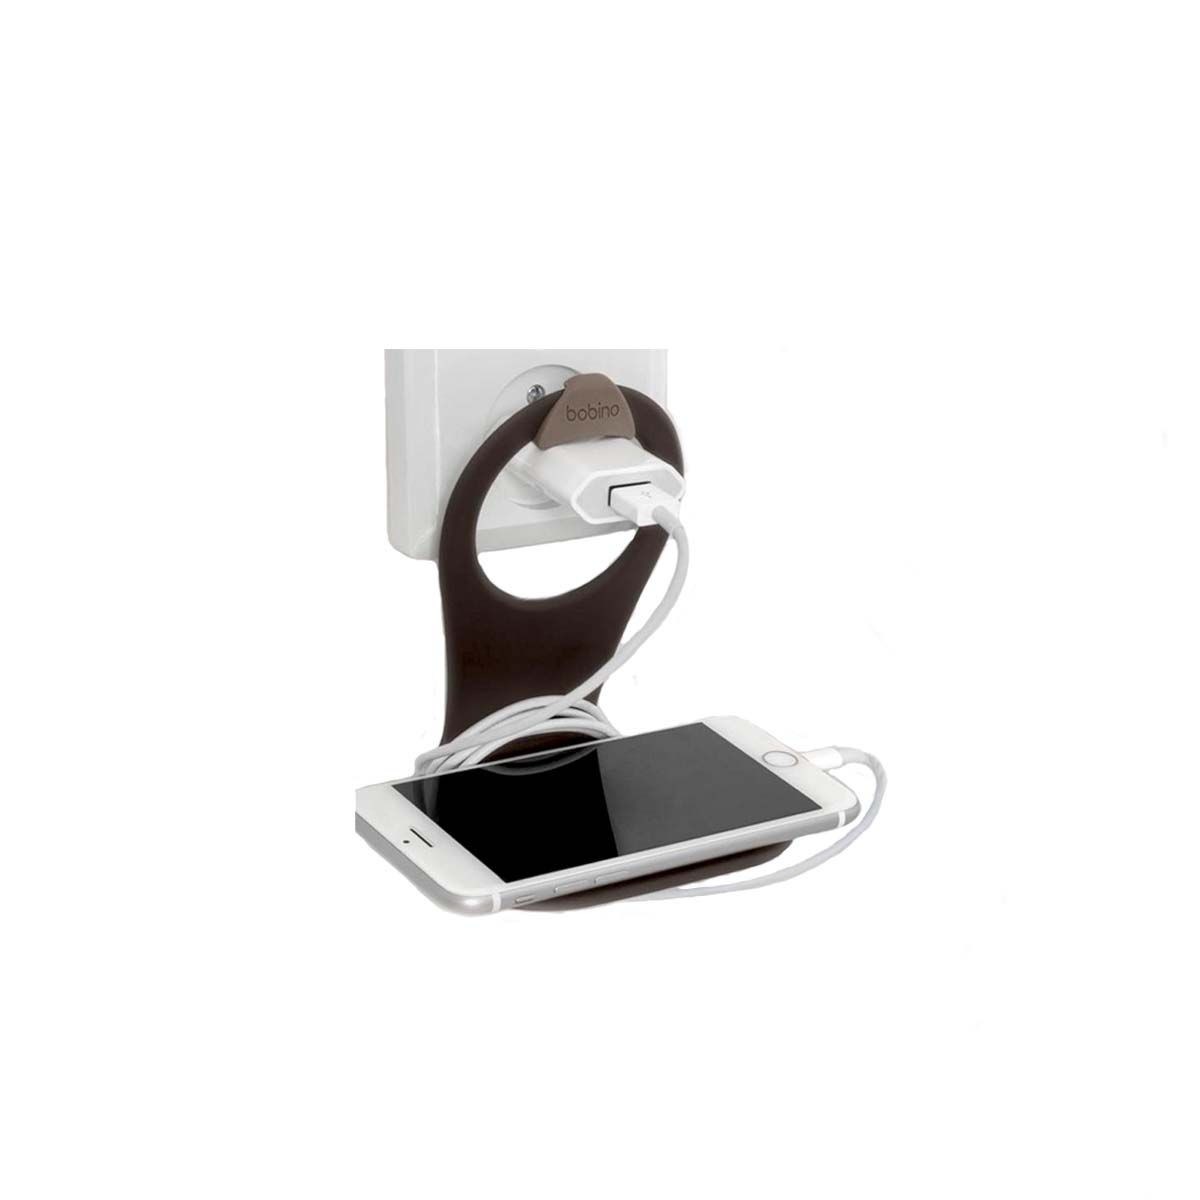 Accessoires téléphone portable - Le Havre - 76600 - Portable